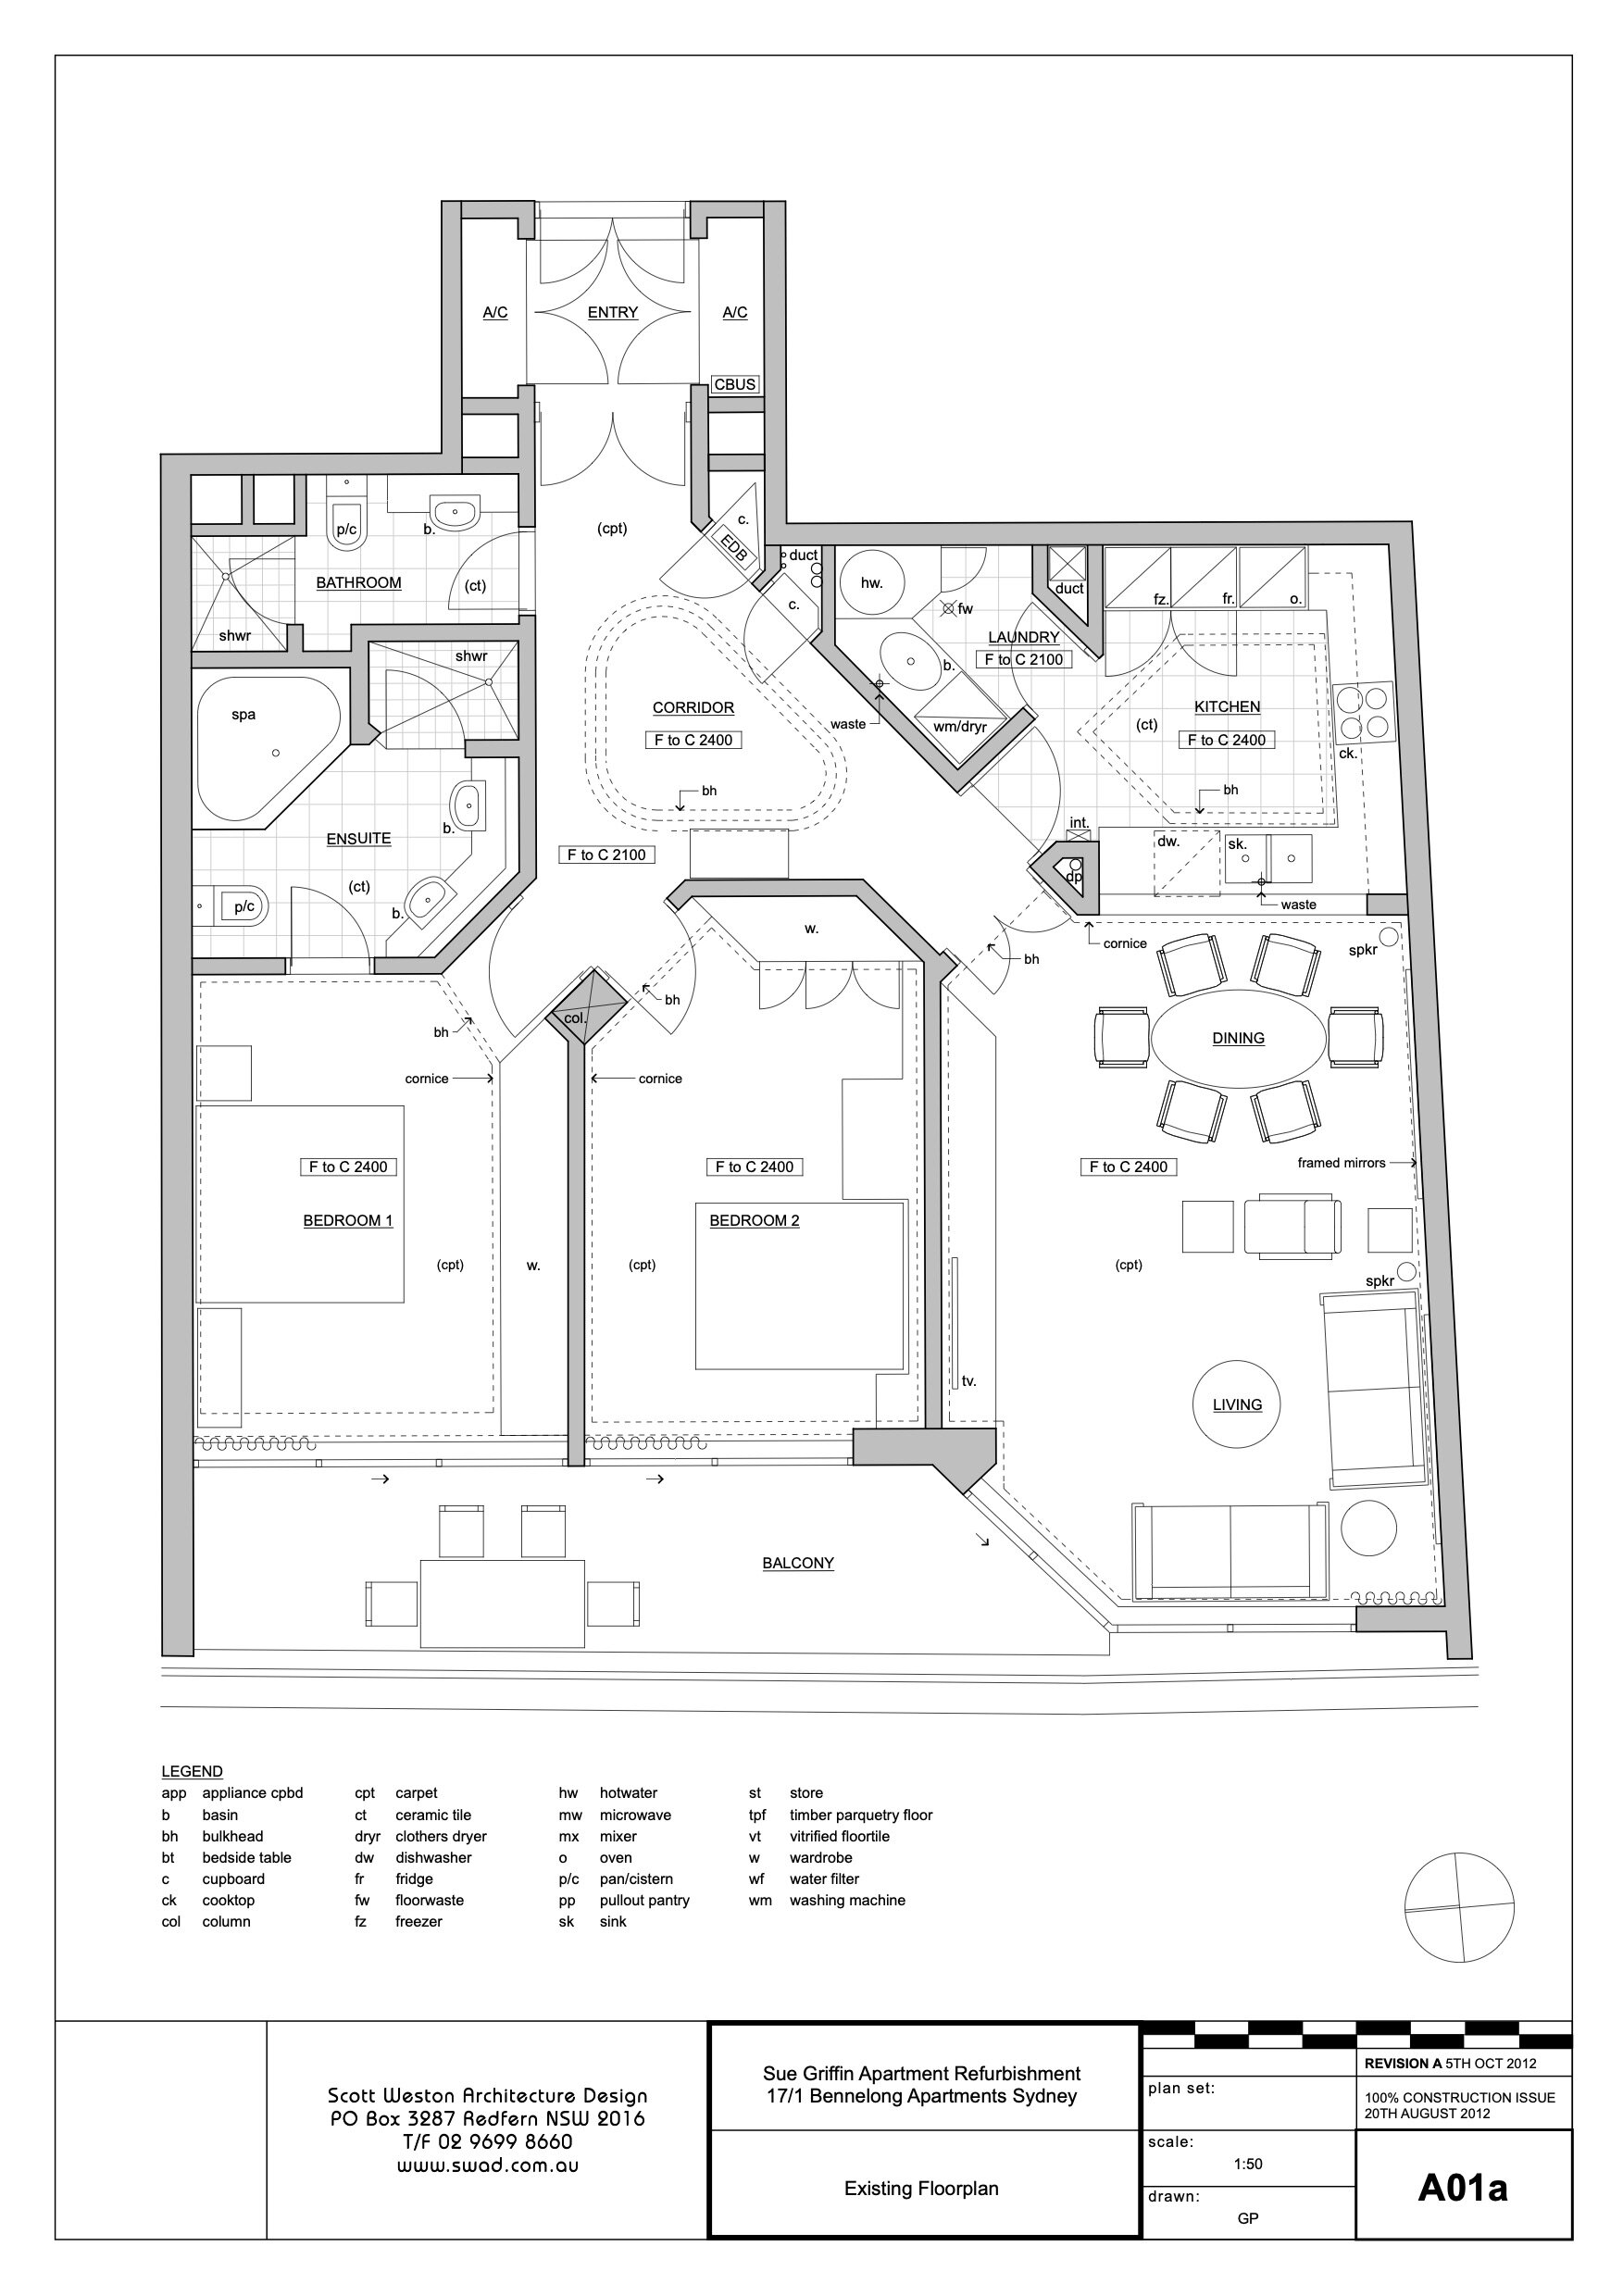 A01a Existing Floorplan.jpg